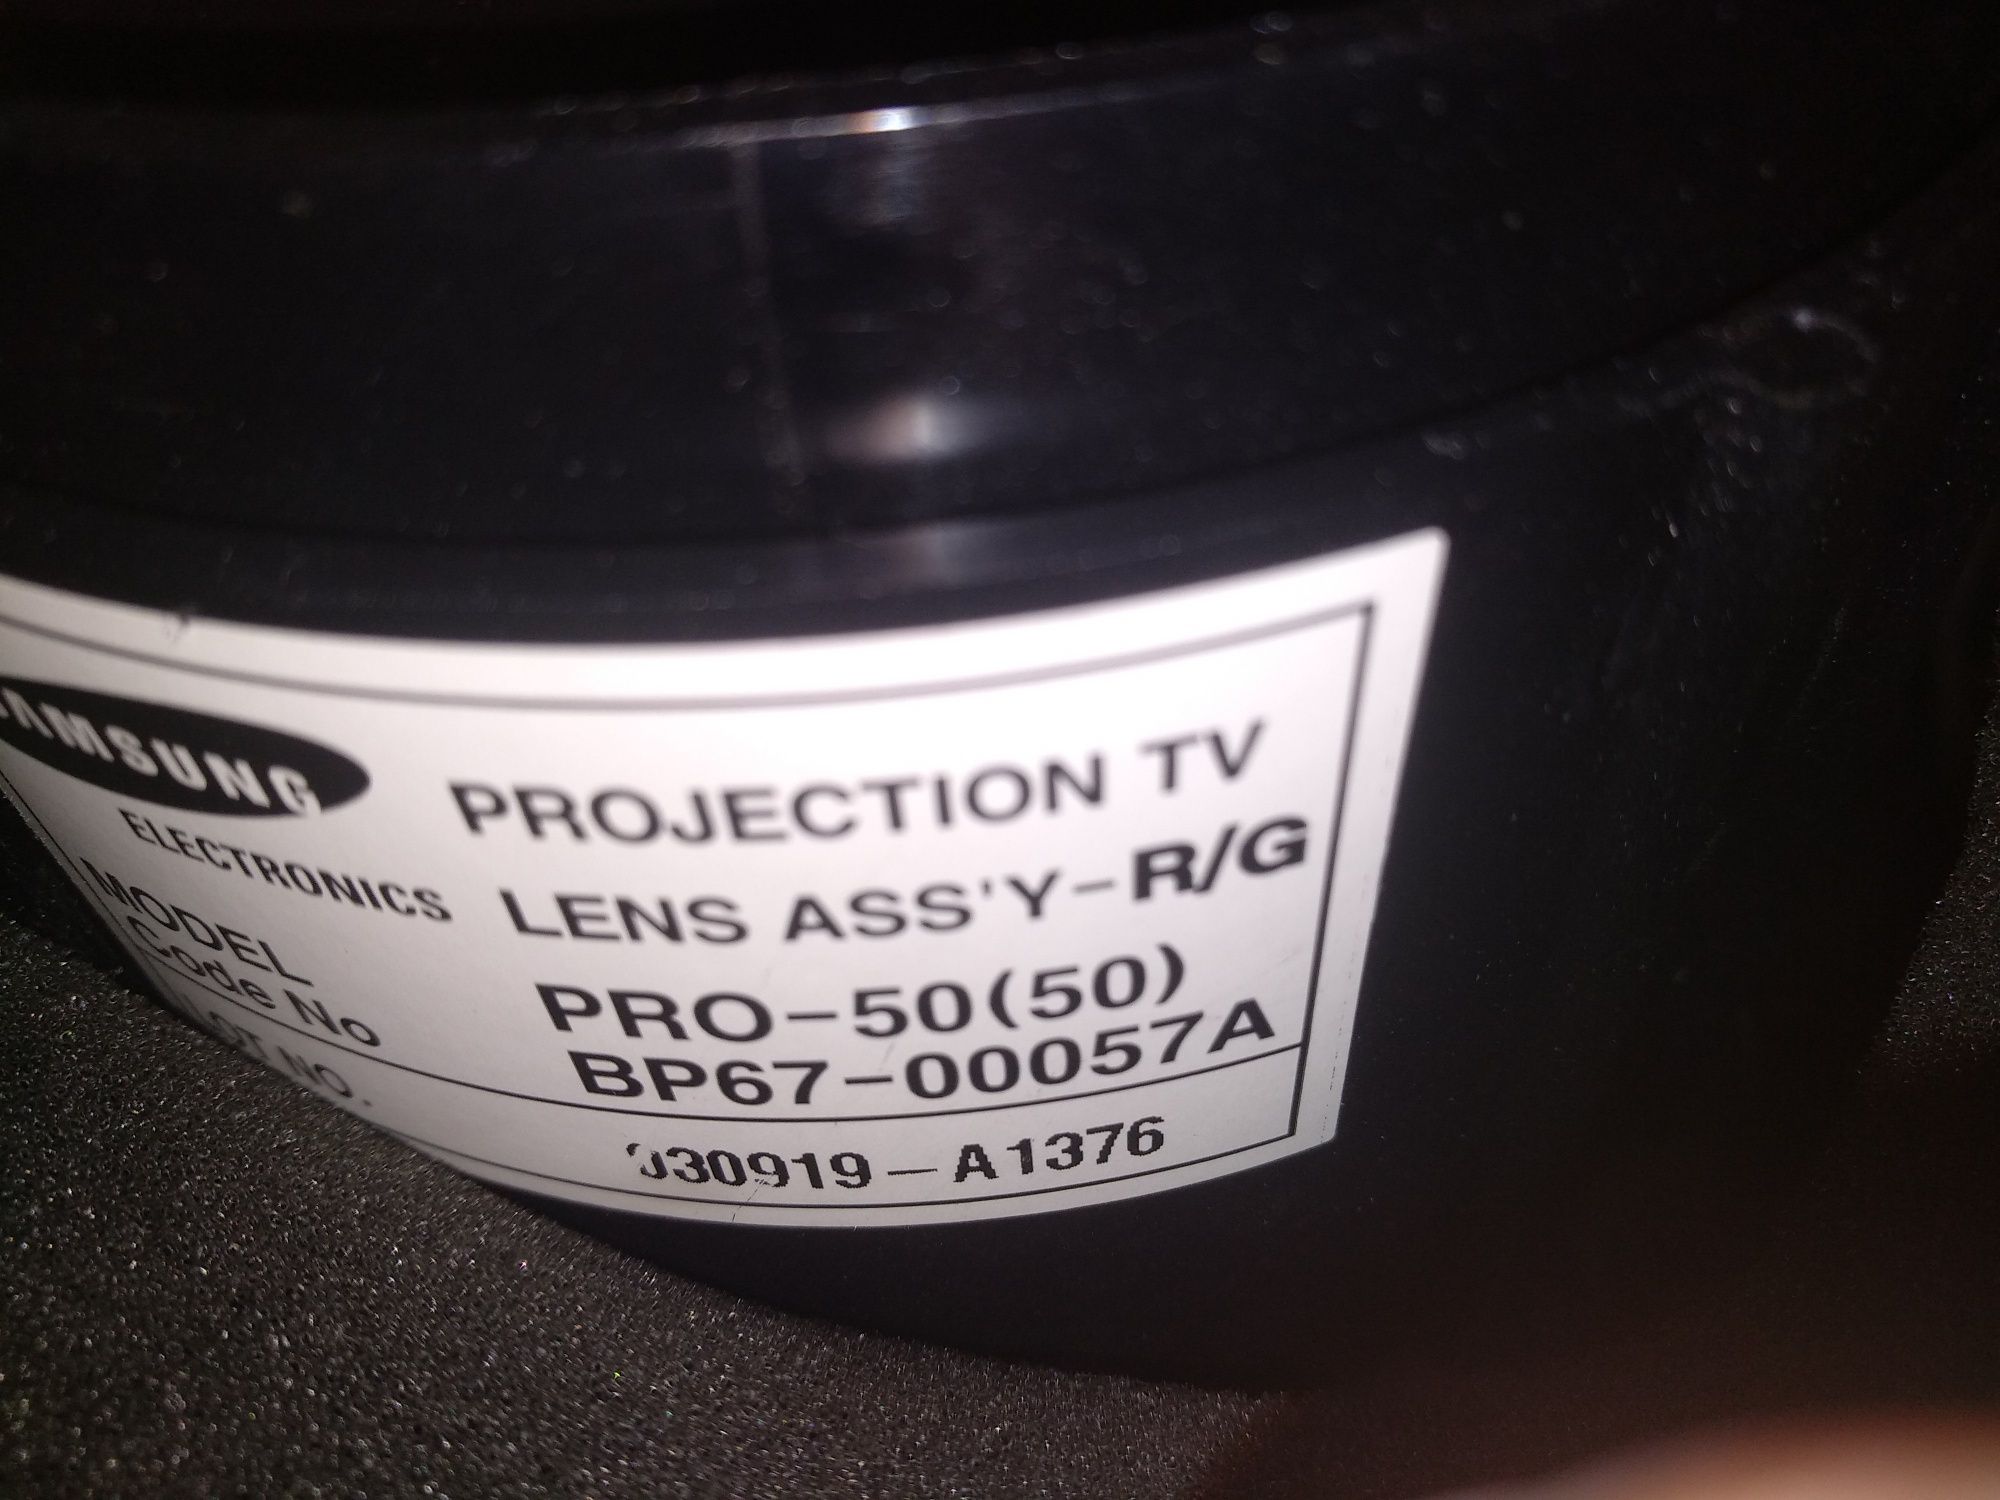 Телевизор проекционный SP-48T6HFR лампа BP67-00057 ВР67 проэкцинонный